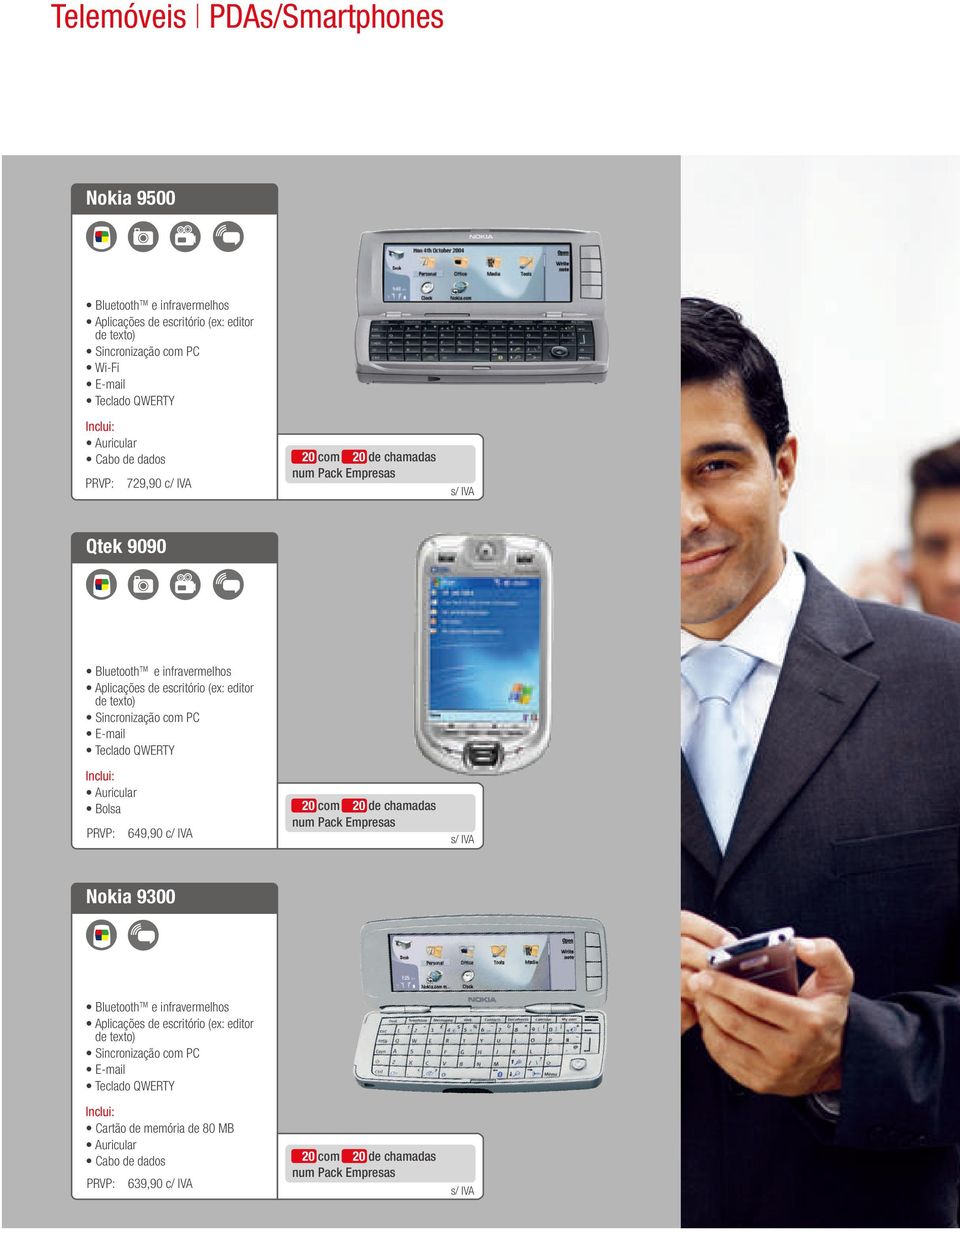 PC E-mail Teclado QWERTY Inclui: Auricular Bolsa PRVP: 649,90 c/ IVA 20 com 20 de chamadas num Pack Empresas s/ IVA Nokia 9300 Bluetooth e infravermelhos Aplicações de escritório